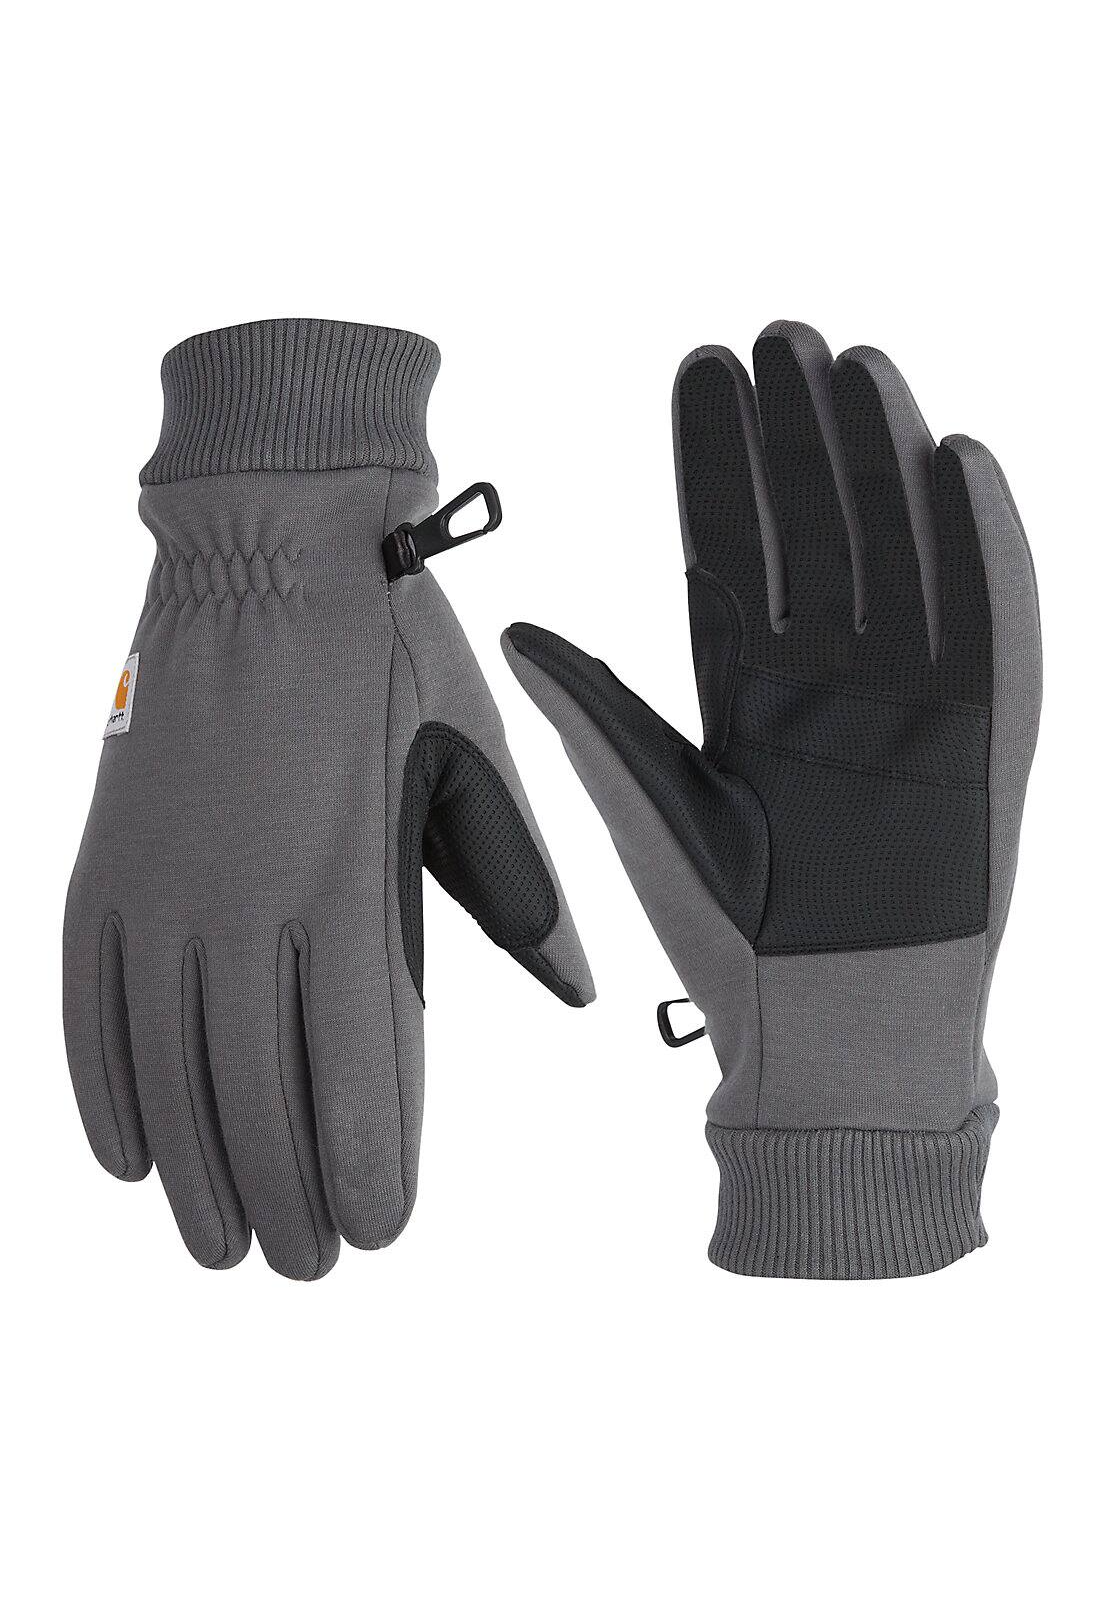 Carhartt C-Touch Work Glove